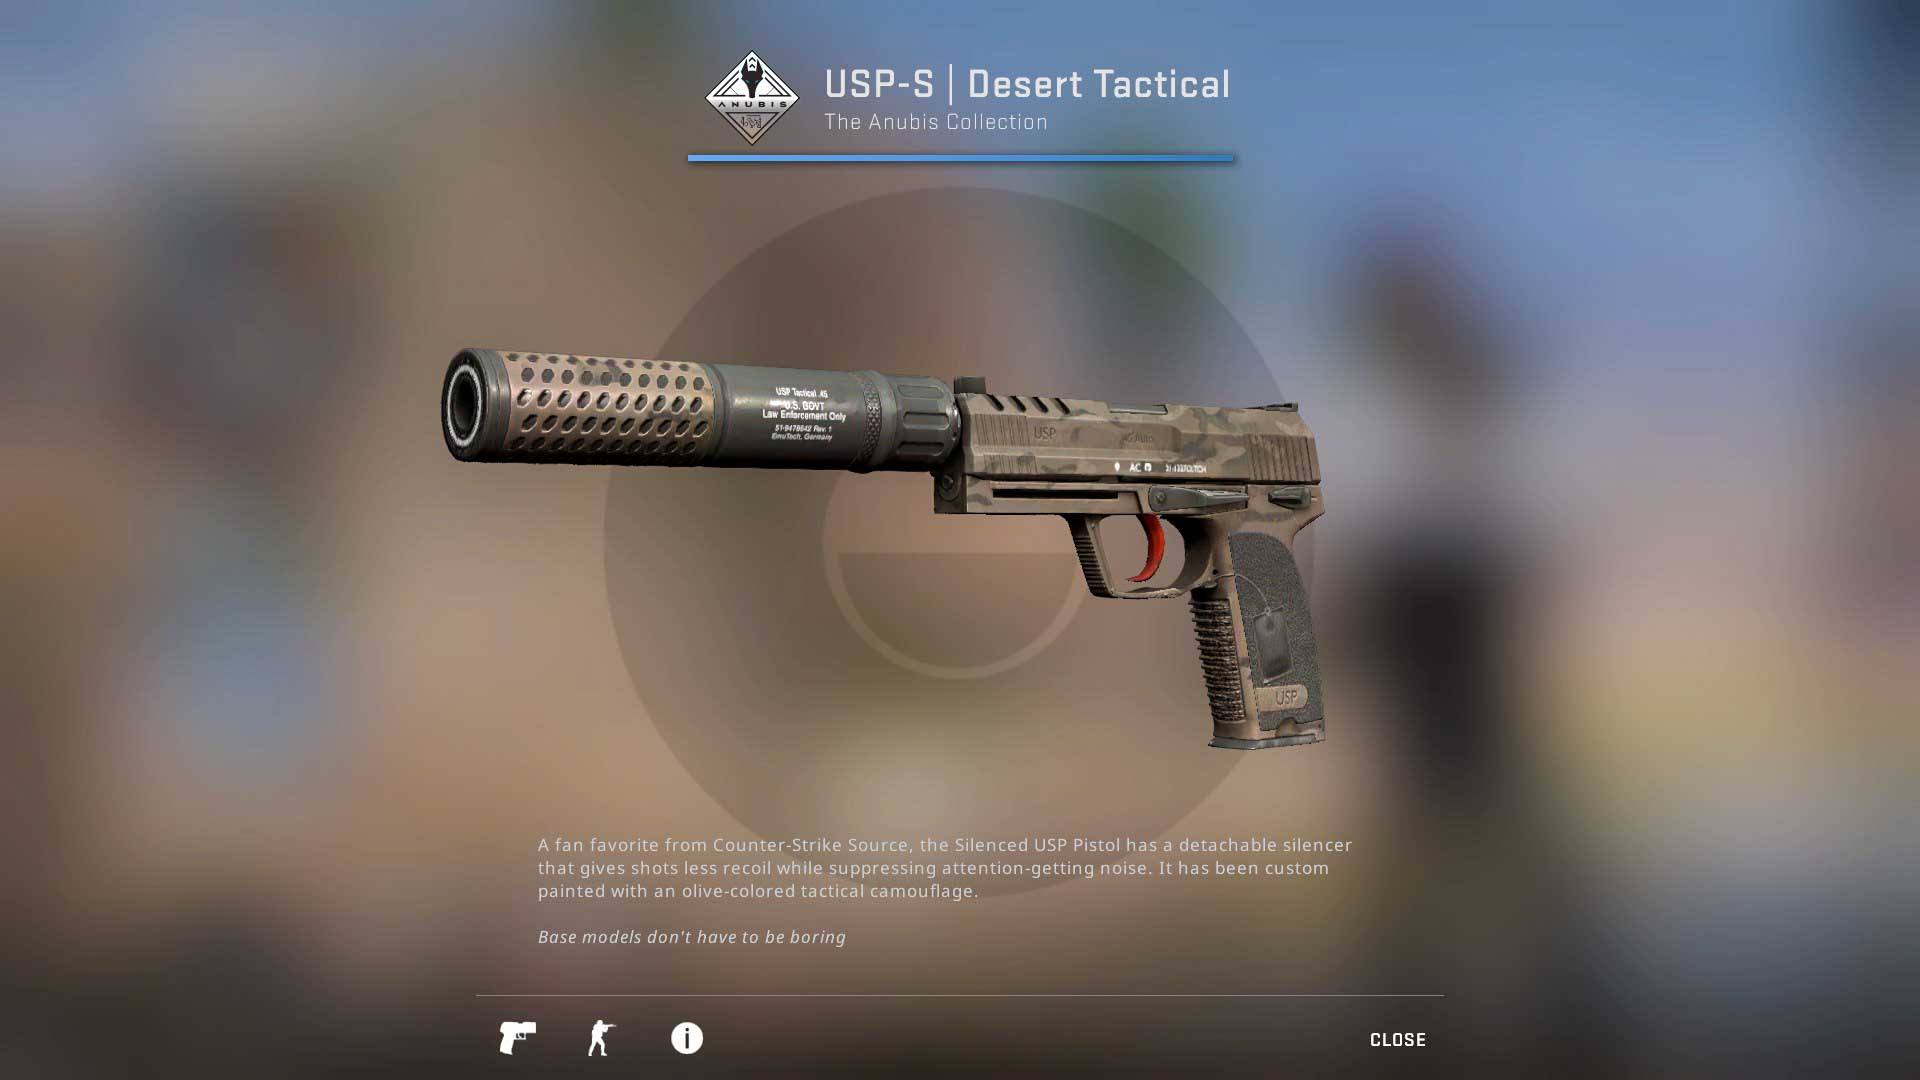 USP-S Desert Tactical csgo skin